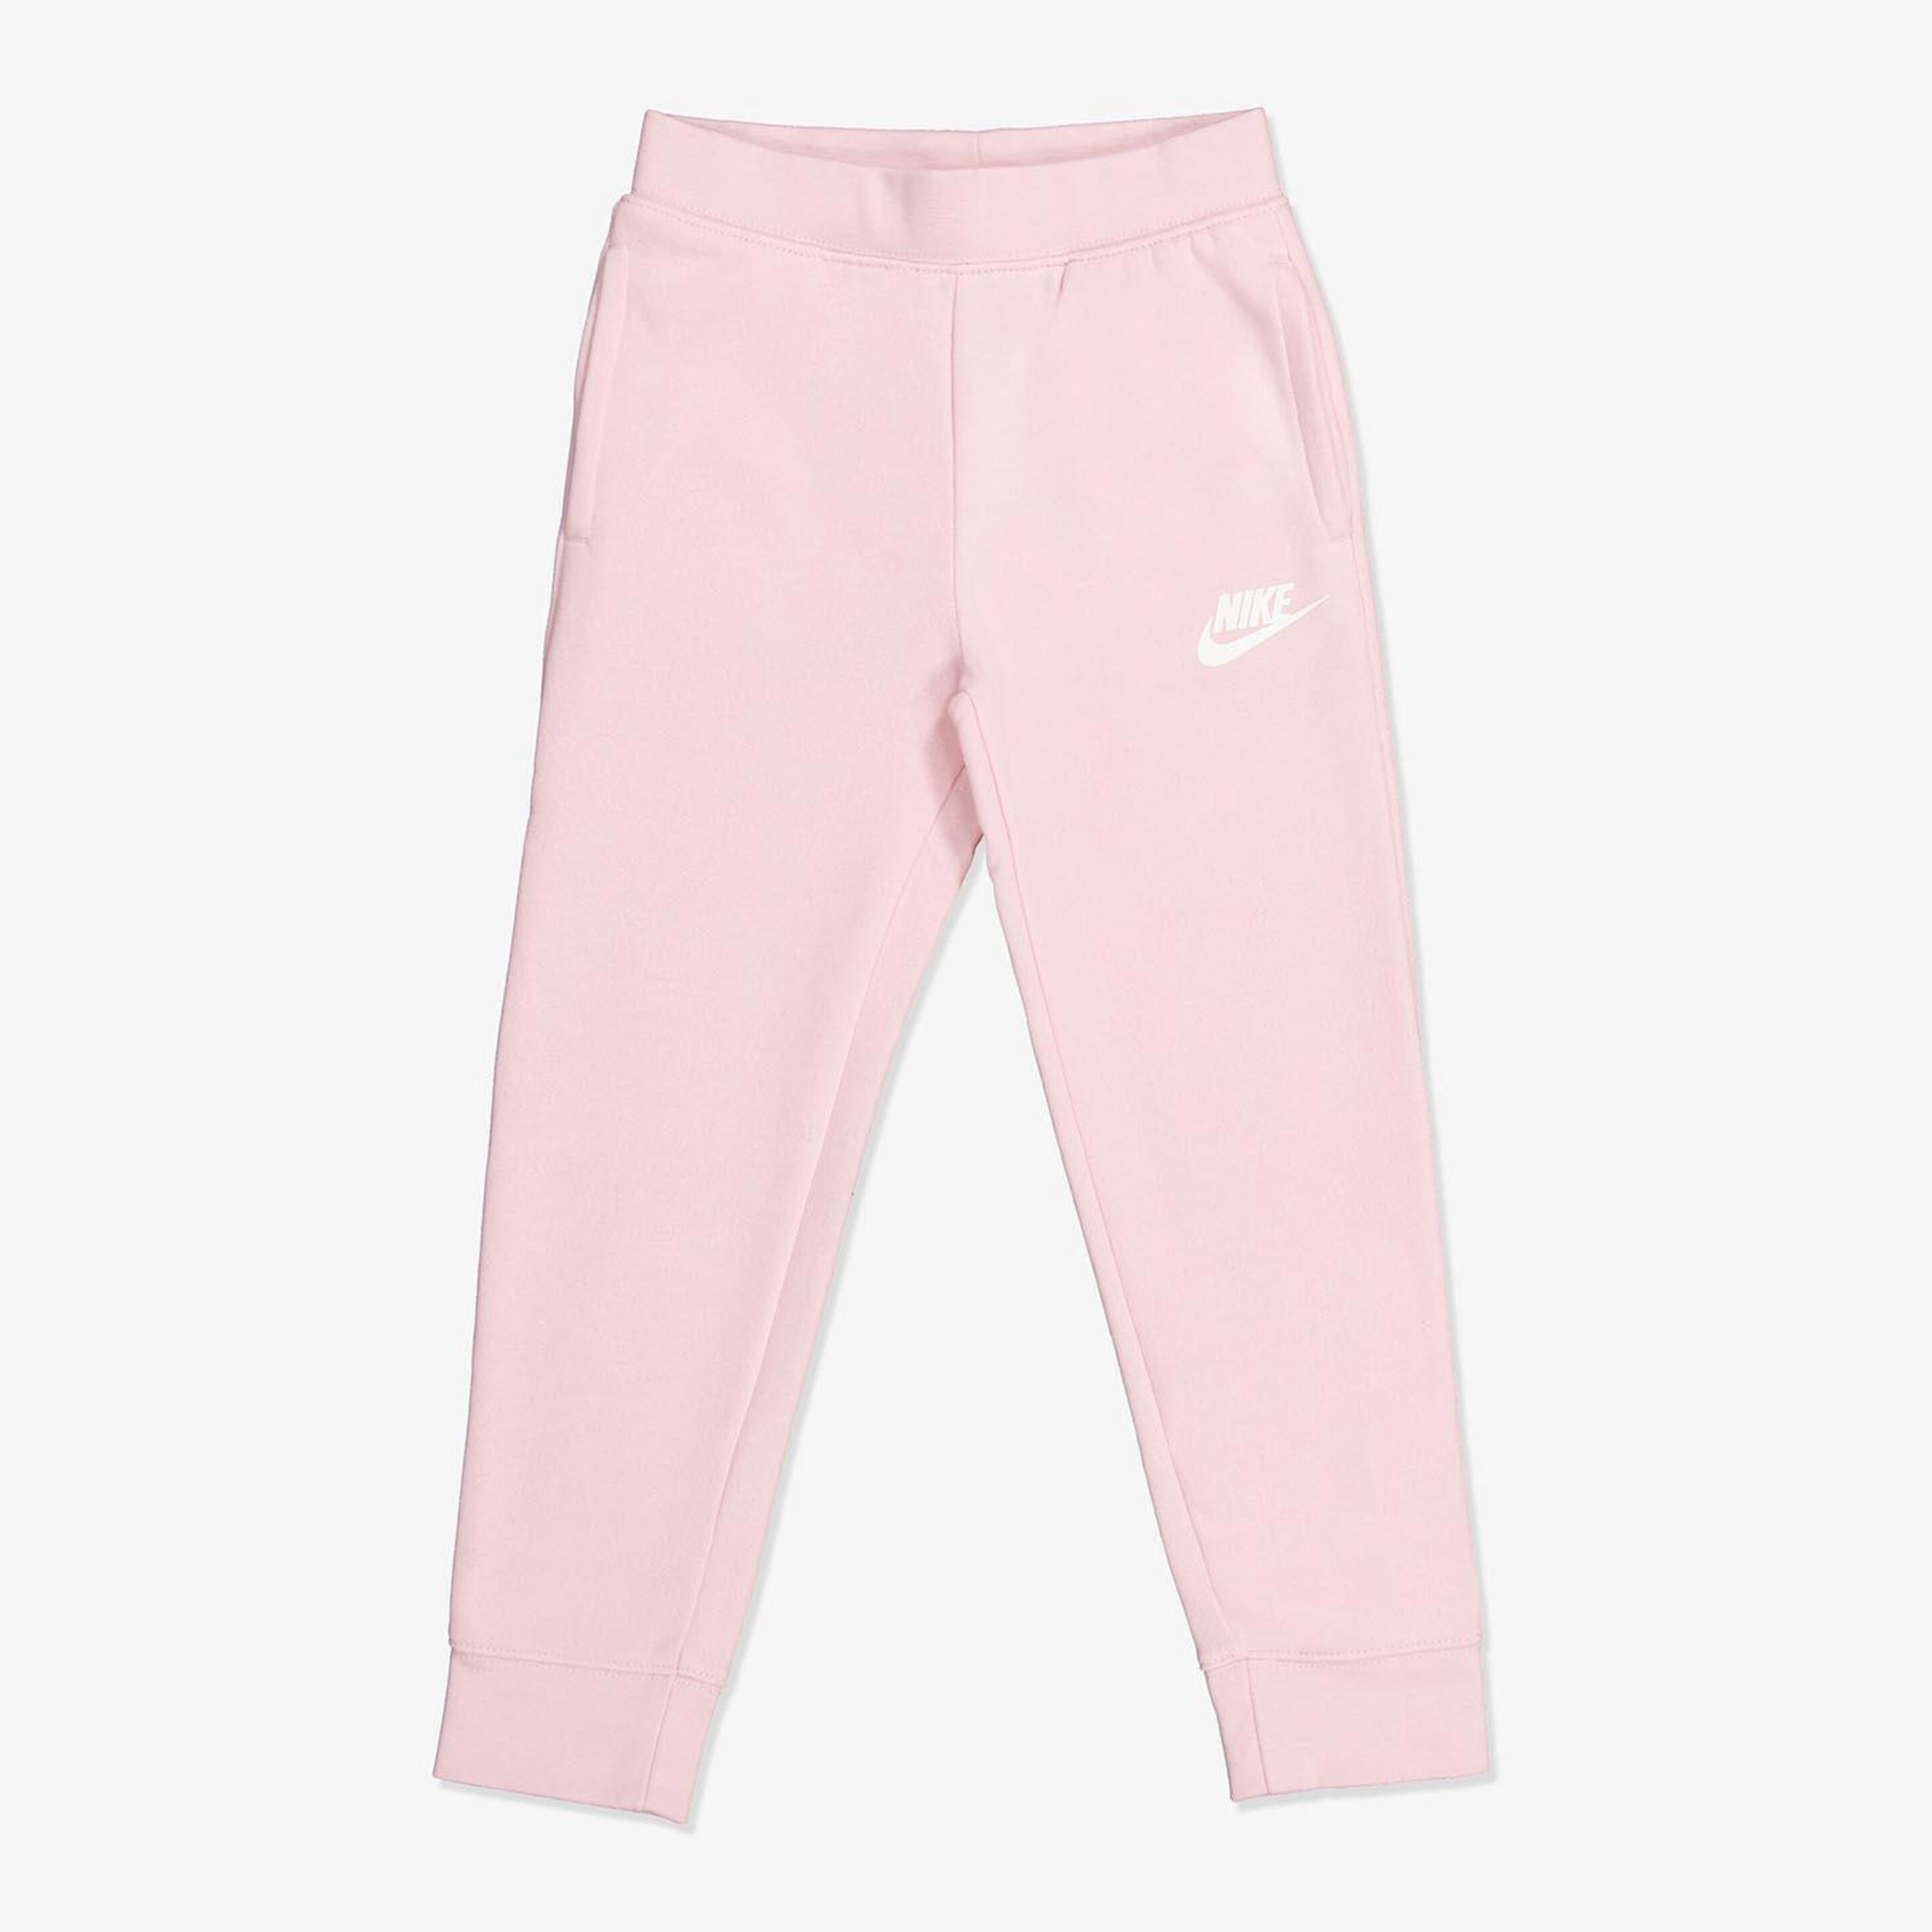 Pantalón Nike - rosa - Pantalón Niña